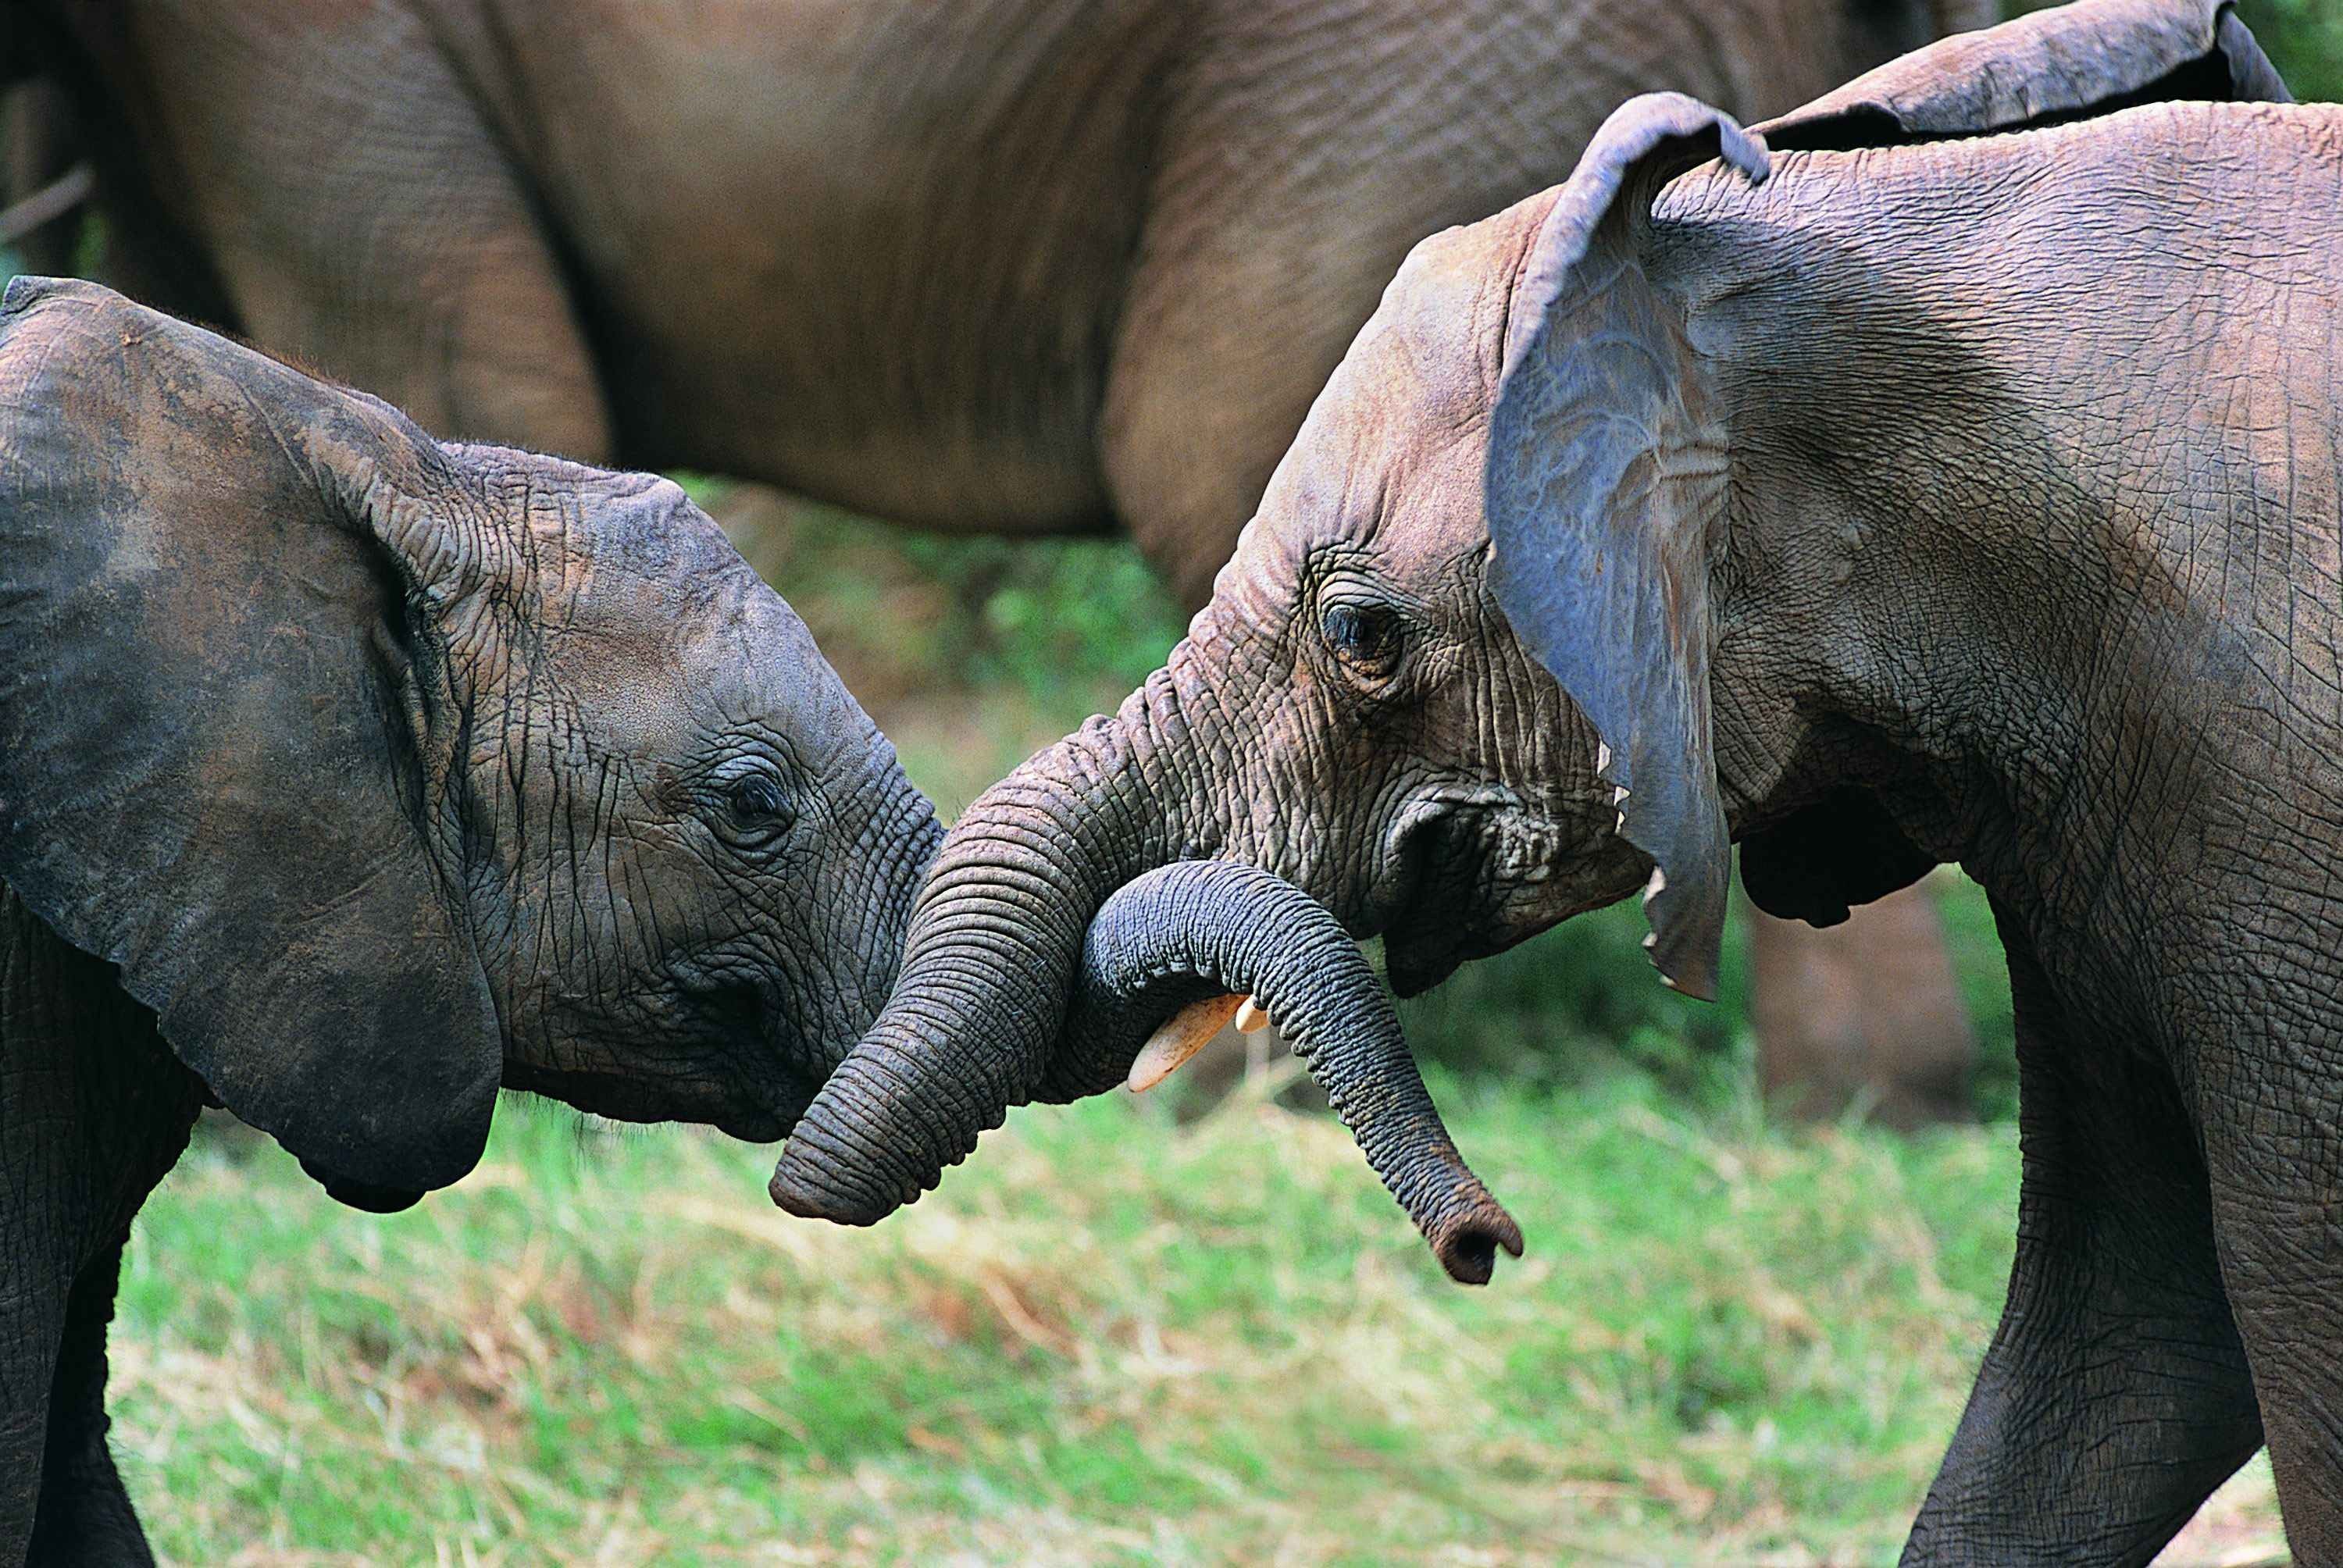 Baby Elephants Fondo de pantalla | 3000x2008 | ID: 30212 - WallpaperVortex.com